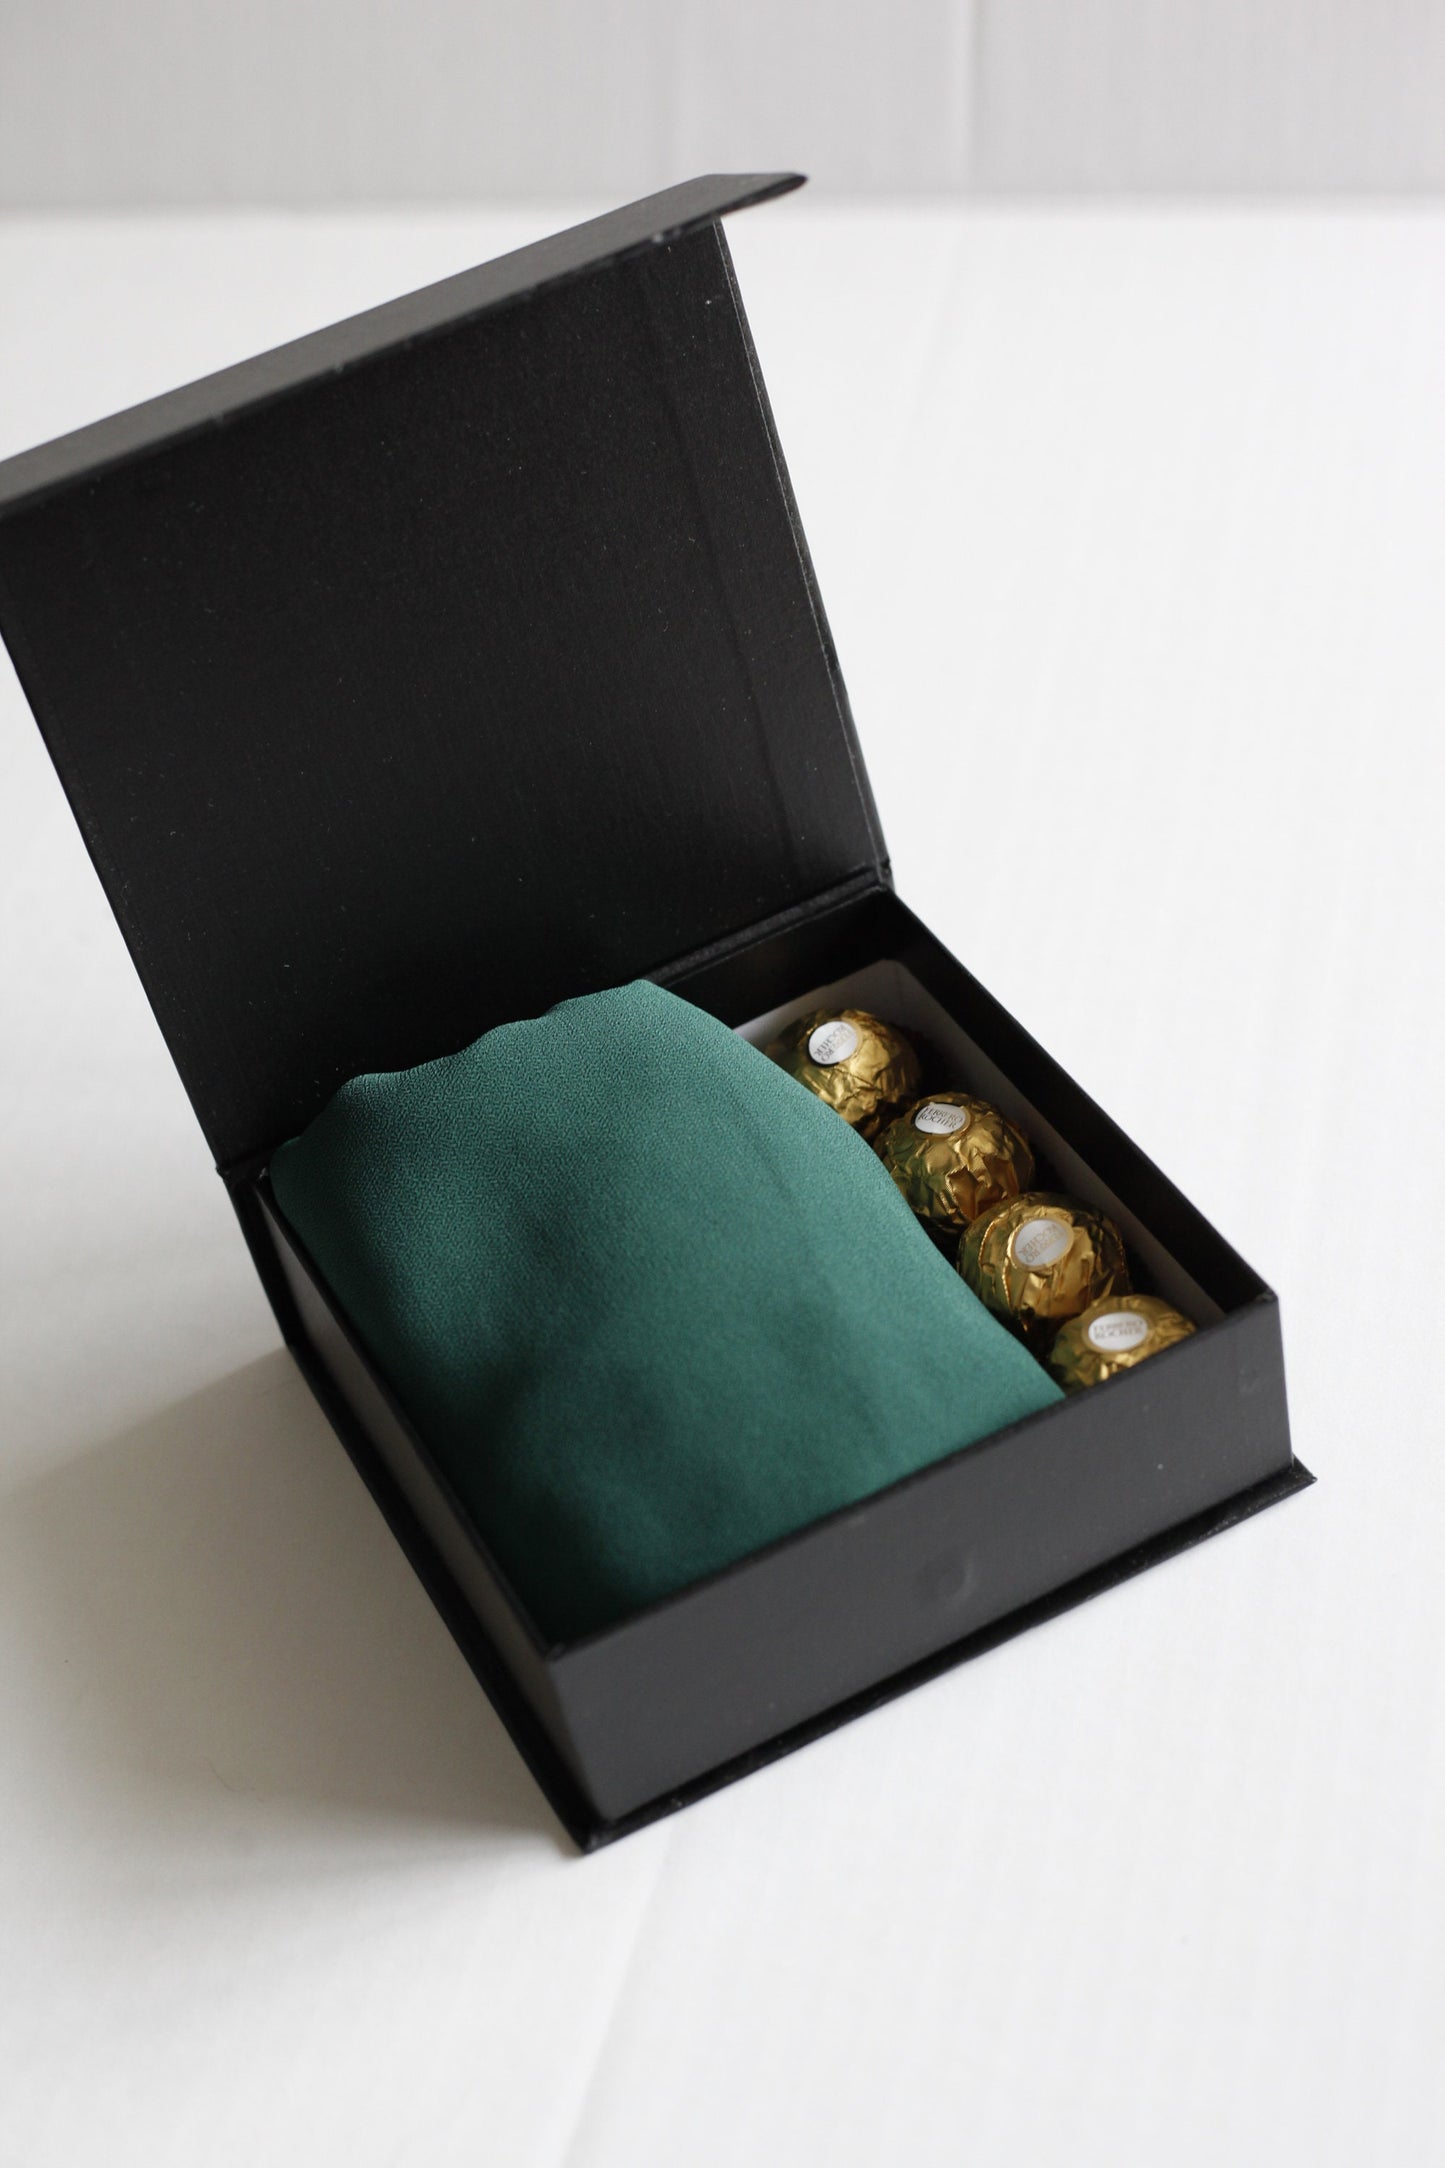 Beautiful Hijab gift box with chocolates, Eid Gift box with hijab set, Chiffon Hijab, chocolates, and bath salt bundle Eid gift for Eid